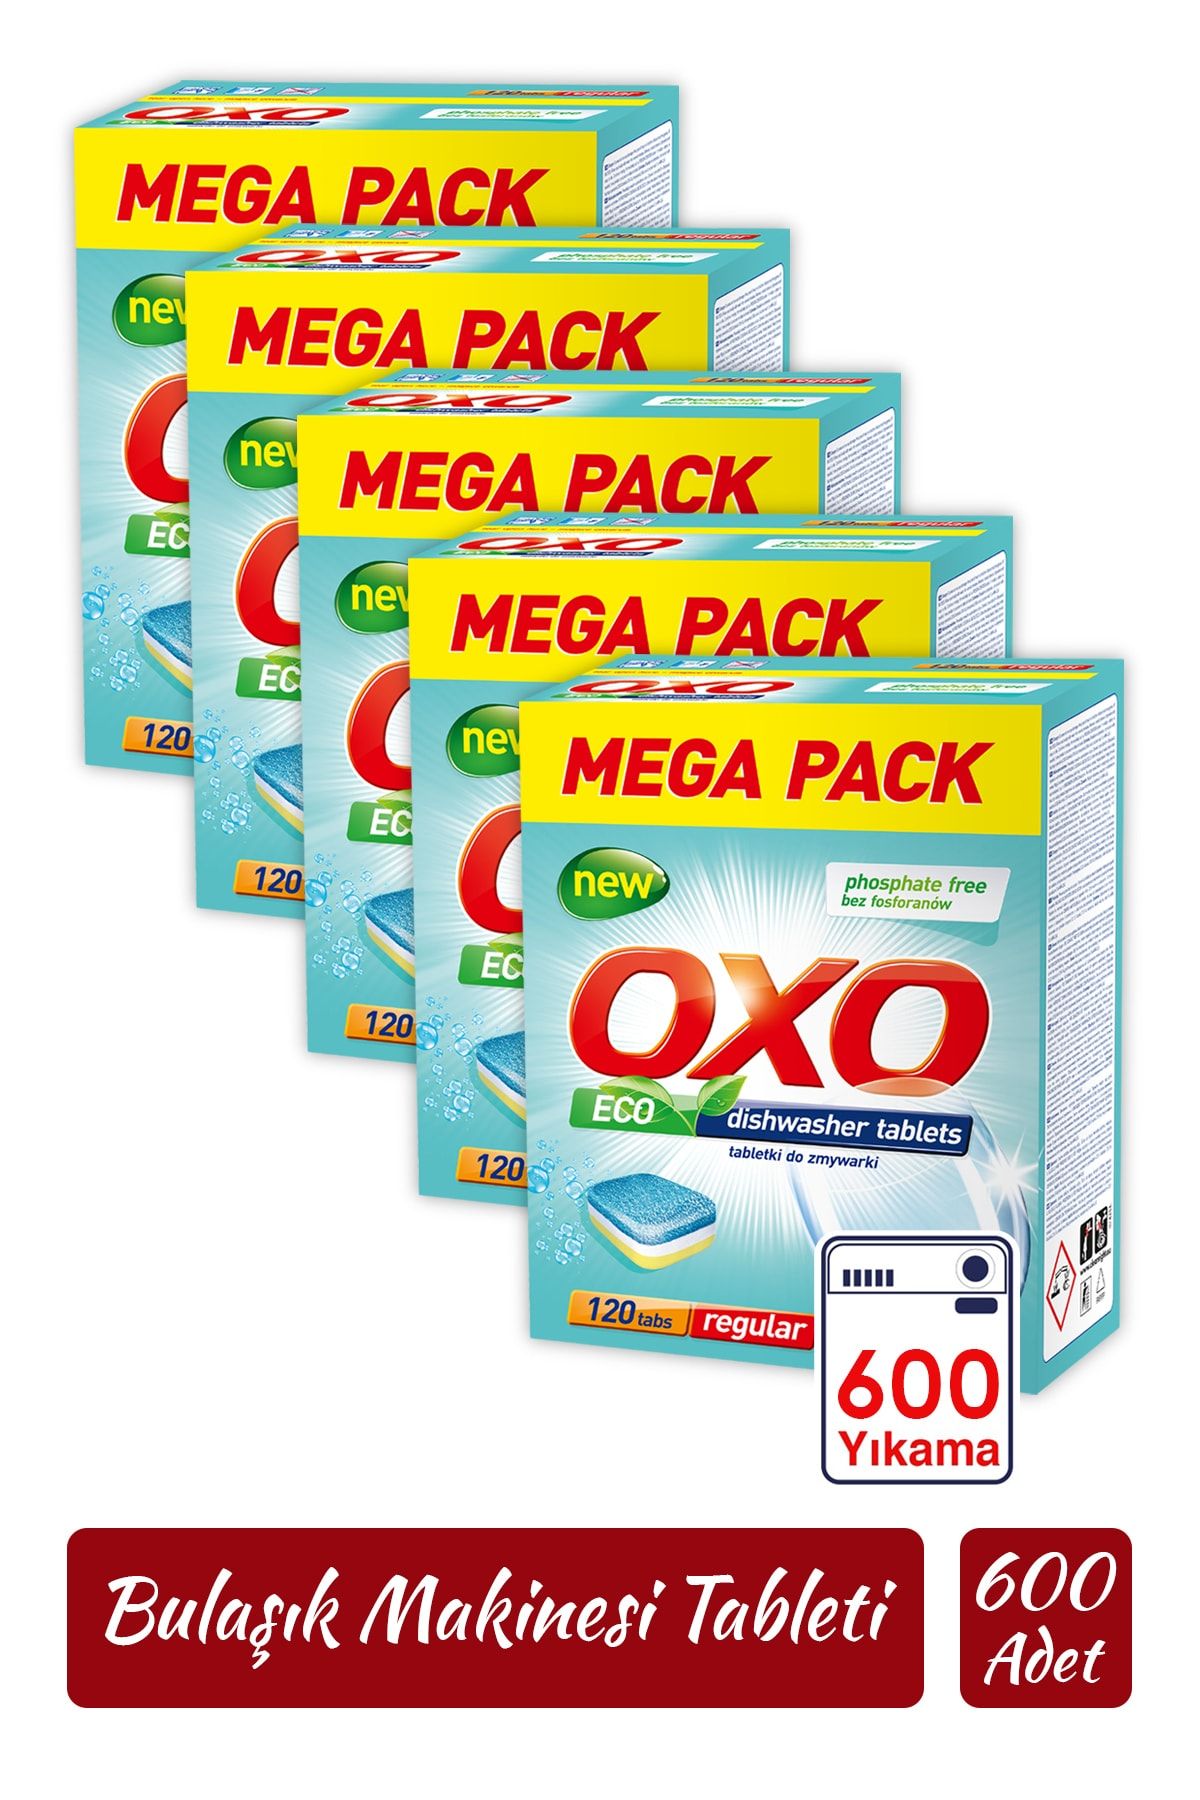 Oxo 600 Adet Bulaşık Makinesi Tableti Mega Paket Deterjan Hepsi Bir Arada (120x5)